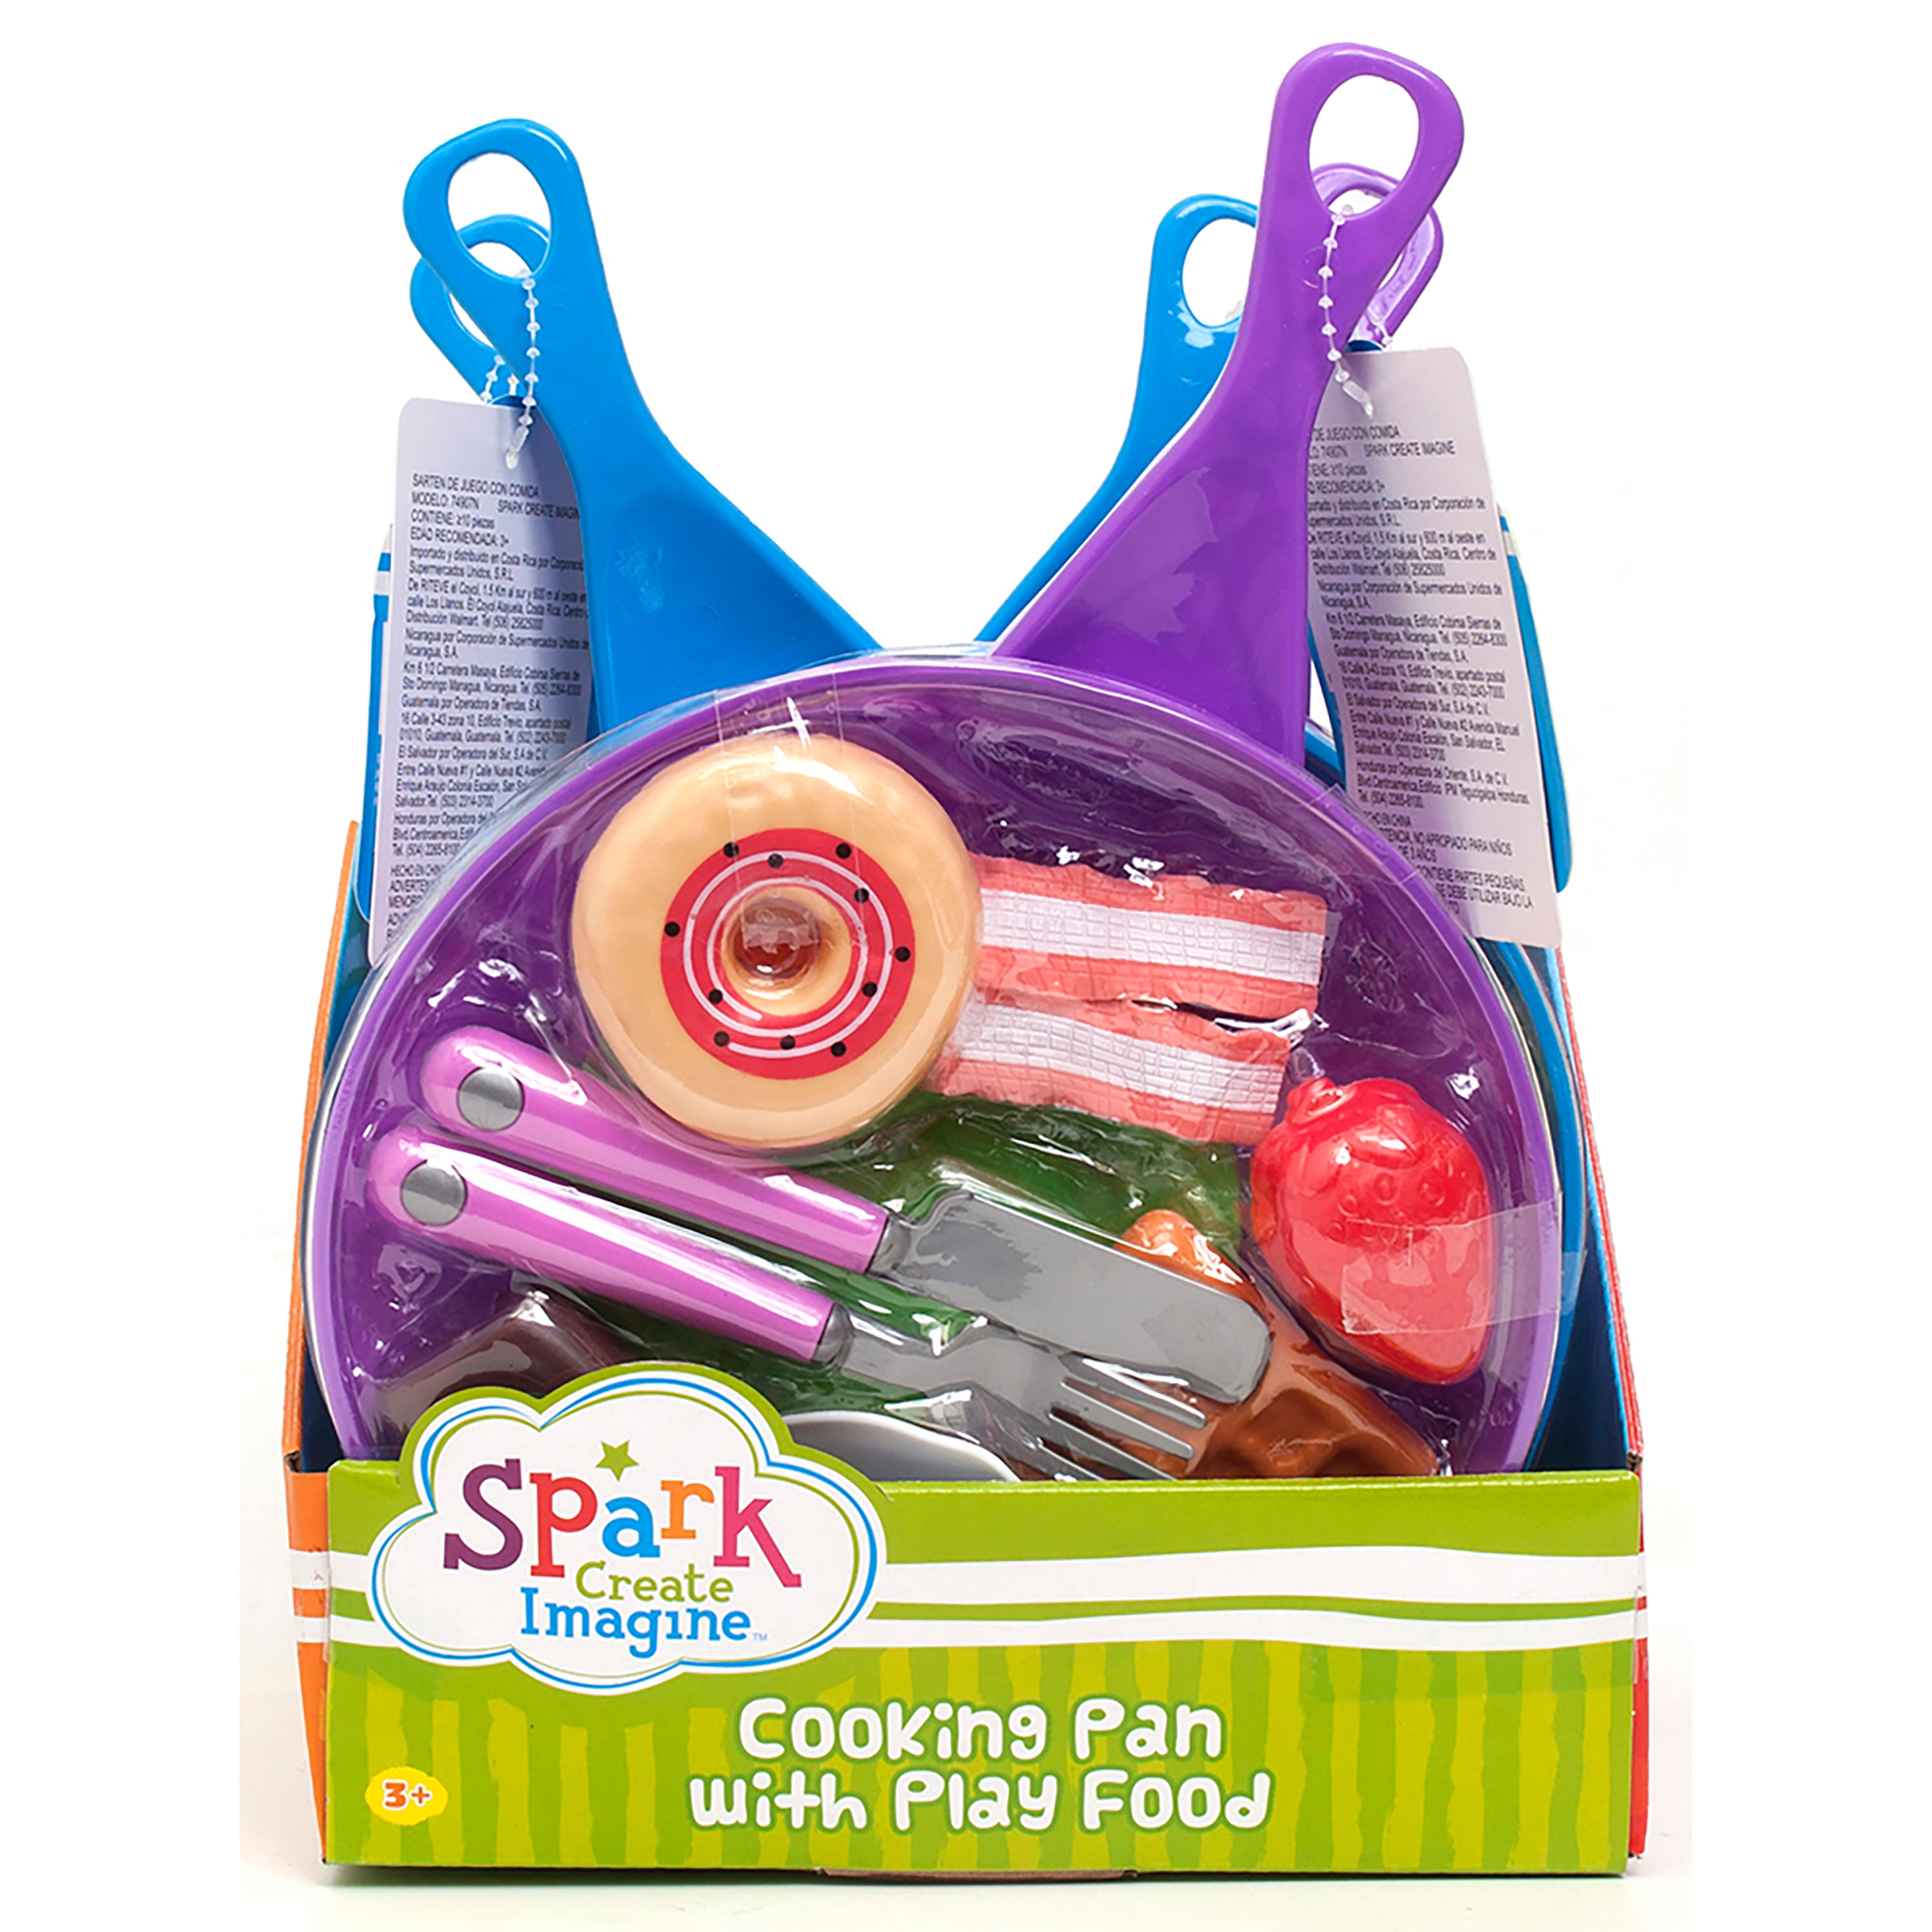 Sart-n-con-comida-Spark-Create-Imagine-de-juguete-1-8101